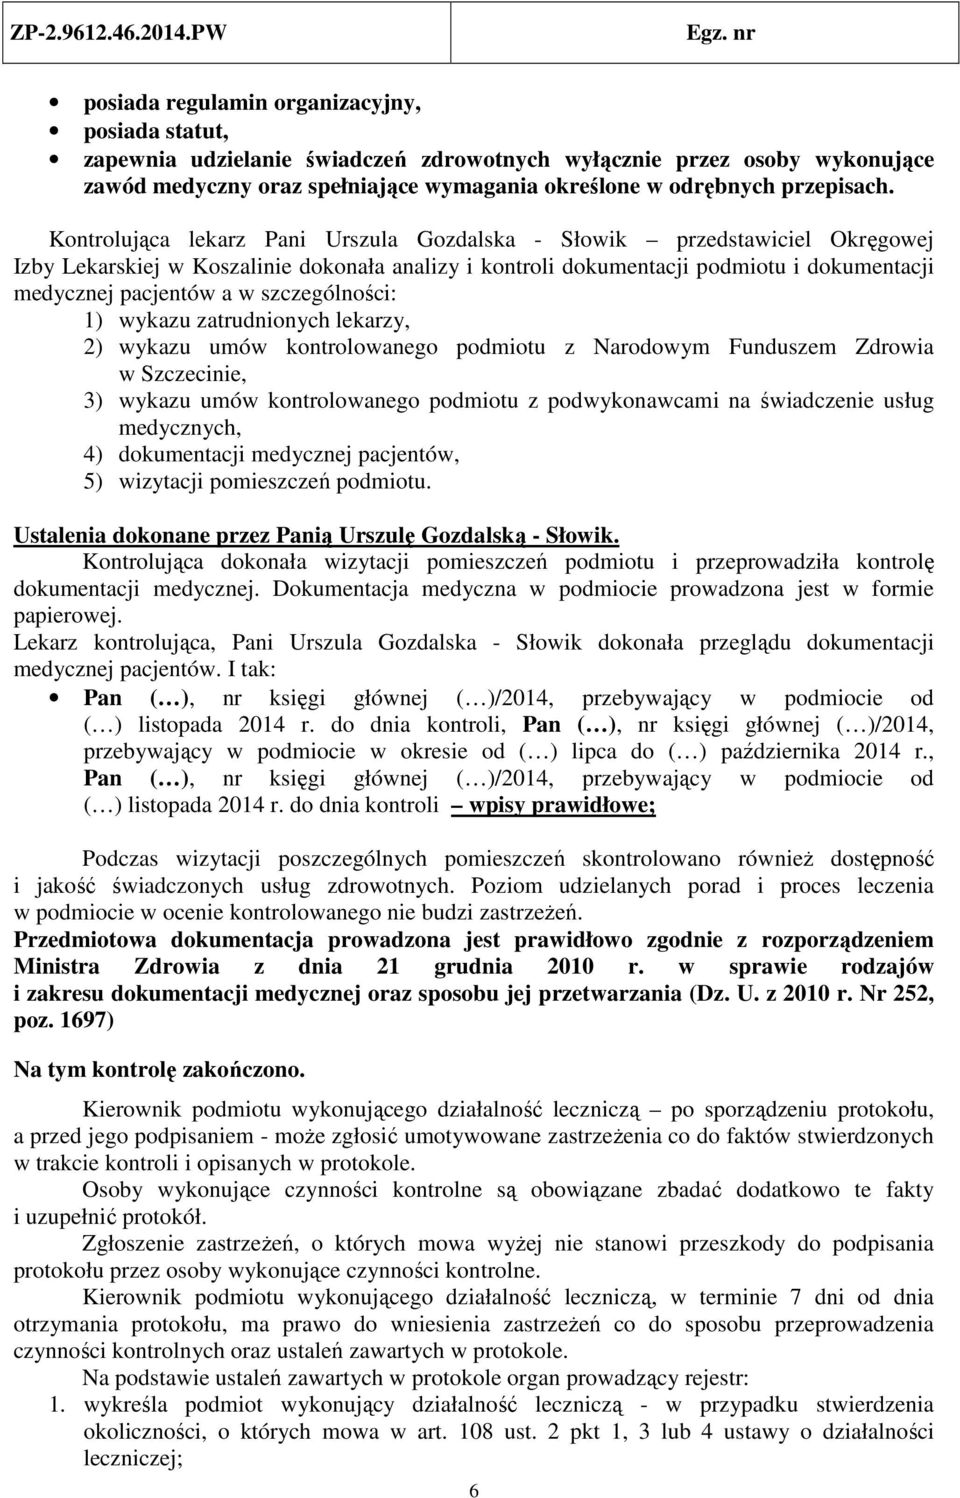 szczególności: 1) wykazu zatrudnionych lekarzy, 2) wykazu umów kontrolowanego podmiotu z Narodowym Funduszem Zdrowia w Szczecinie, 3) wykazu umów kontrolowanego podmiotu z podwykonawcami na